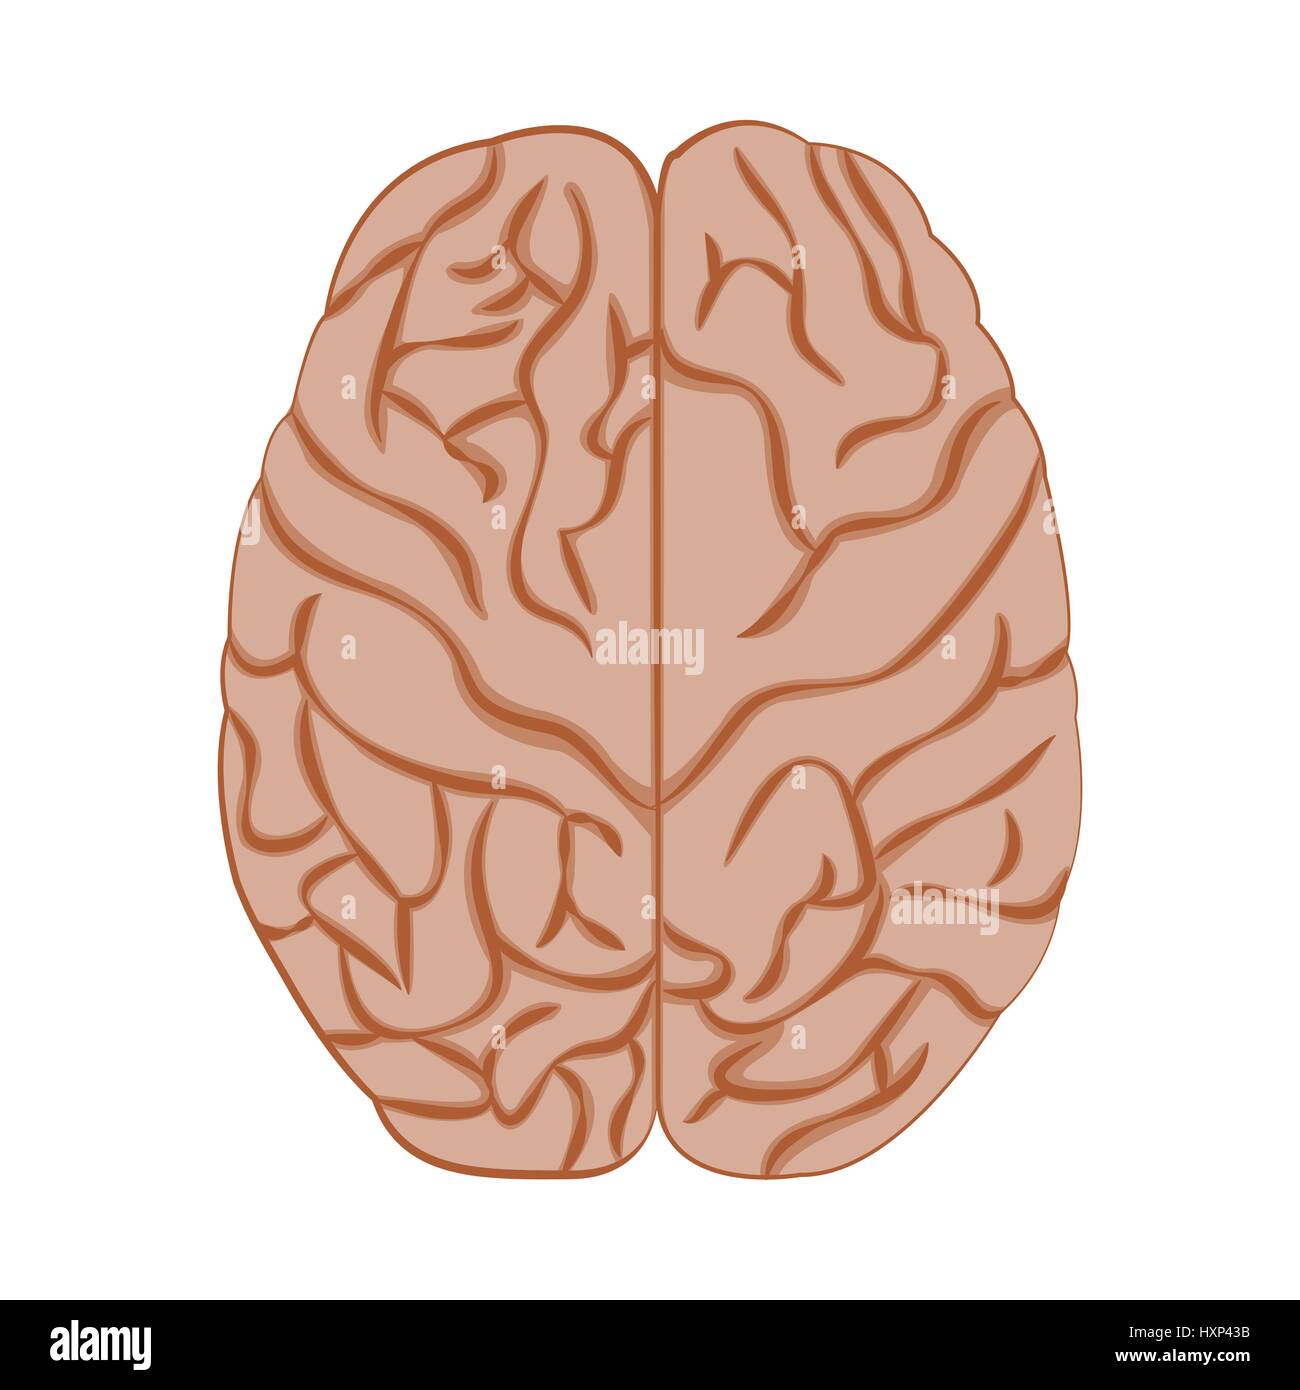 Medicine icon brain. Stock Vector